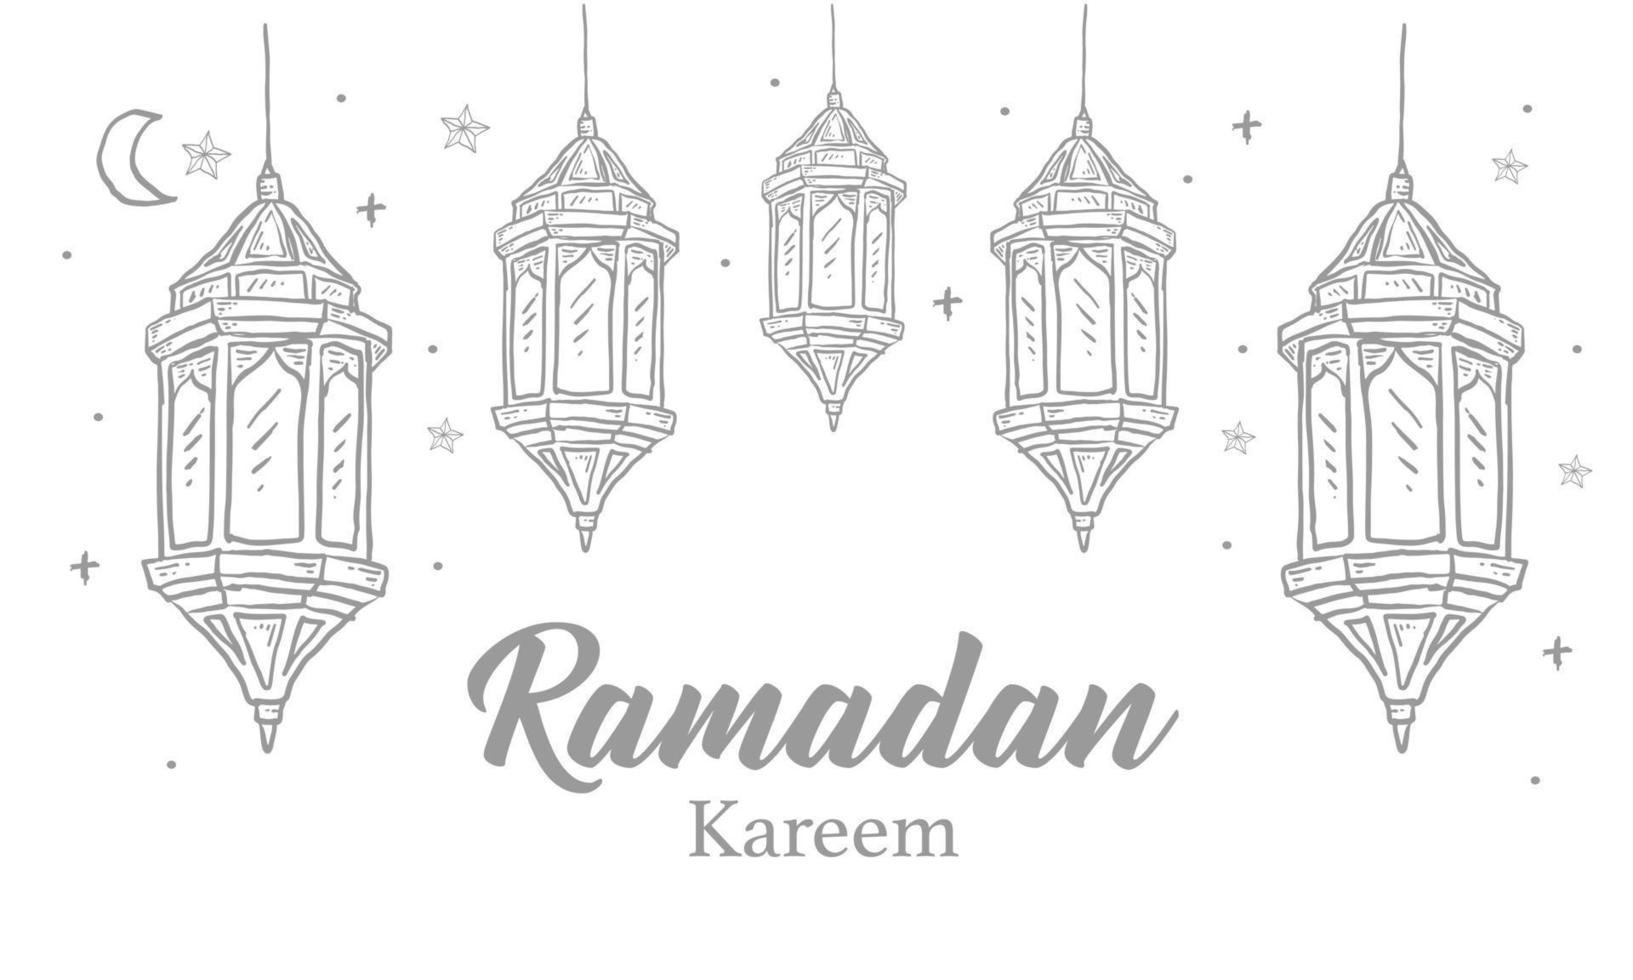 biglietto di auguri ramadan kareem con una linea di ornamento islamico. illustrazione vettoriale vintage disegnata a mano isolata su sfondo bianco.